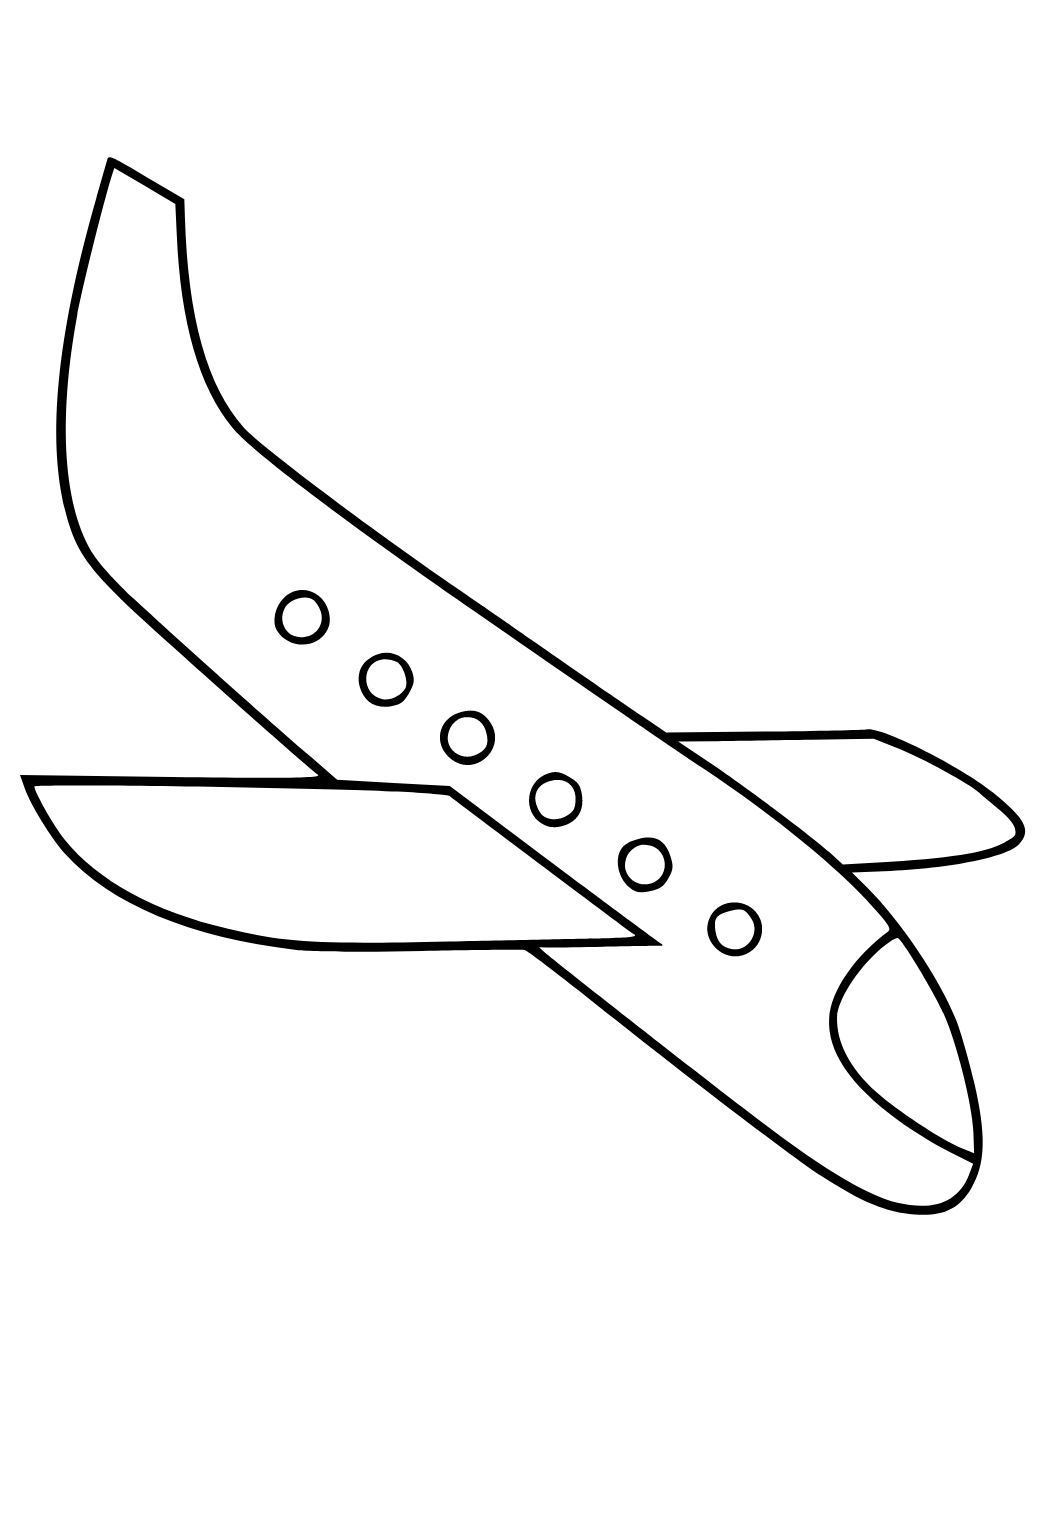 Vliegtuig